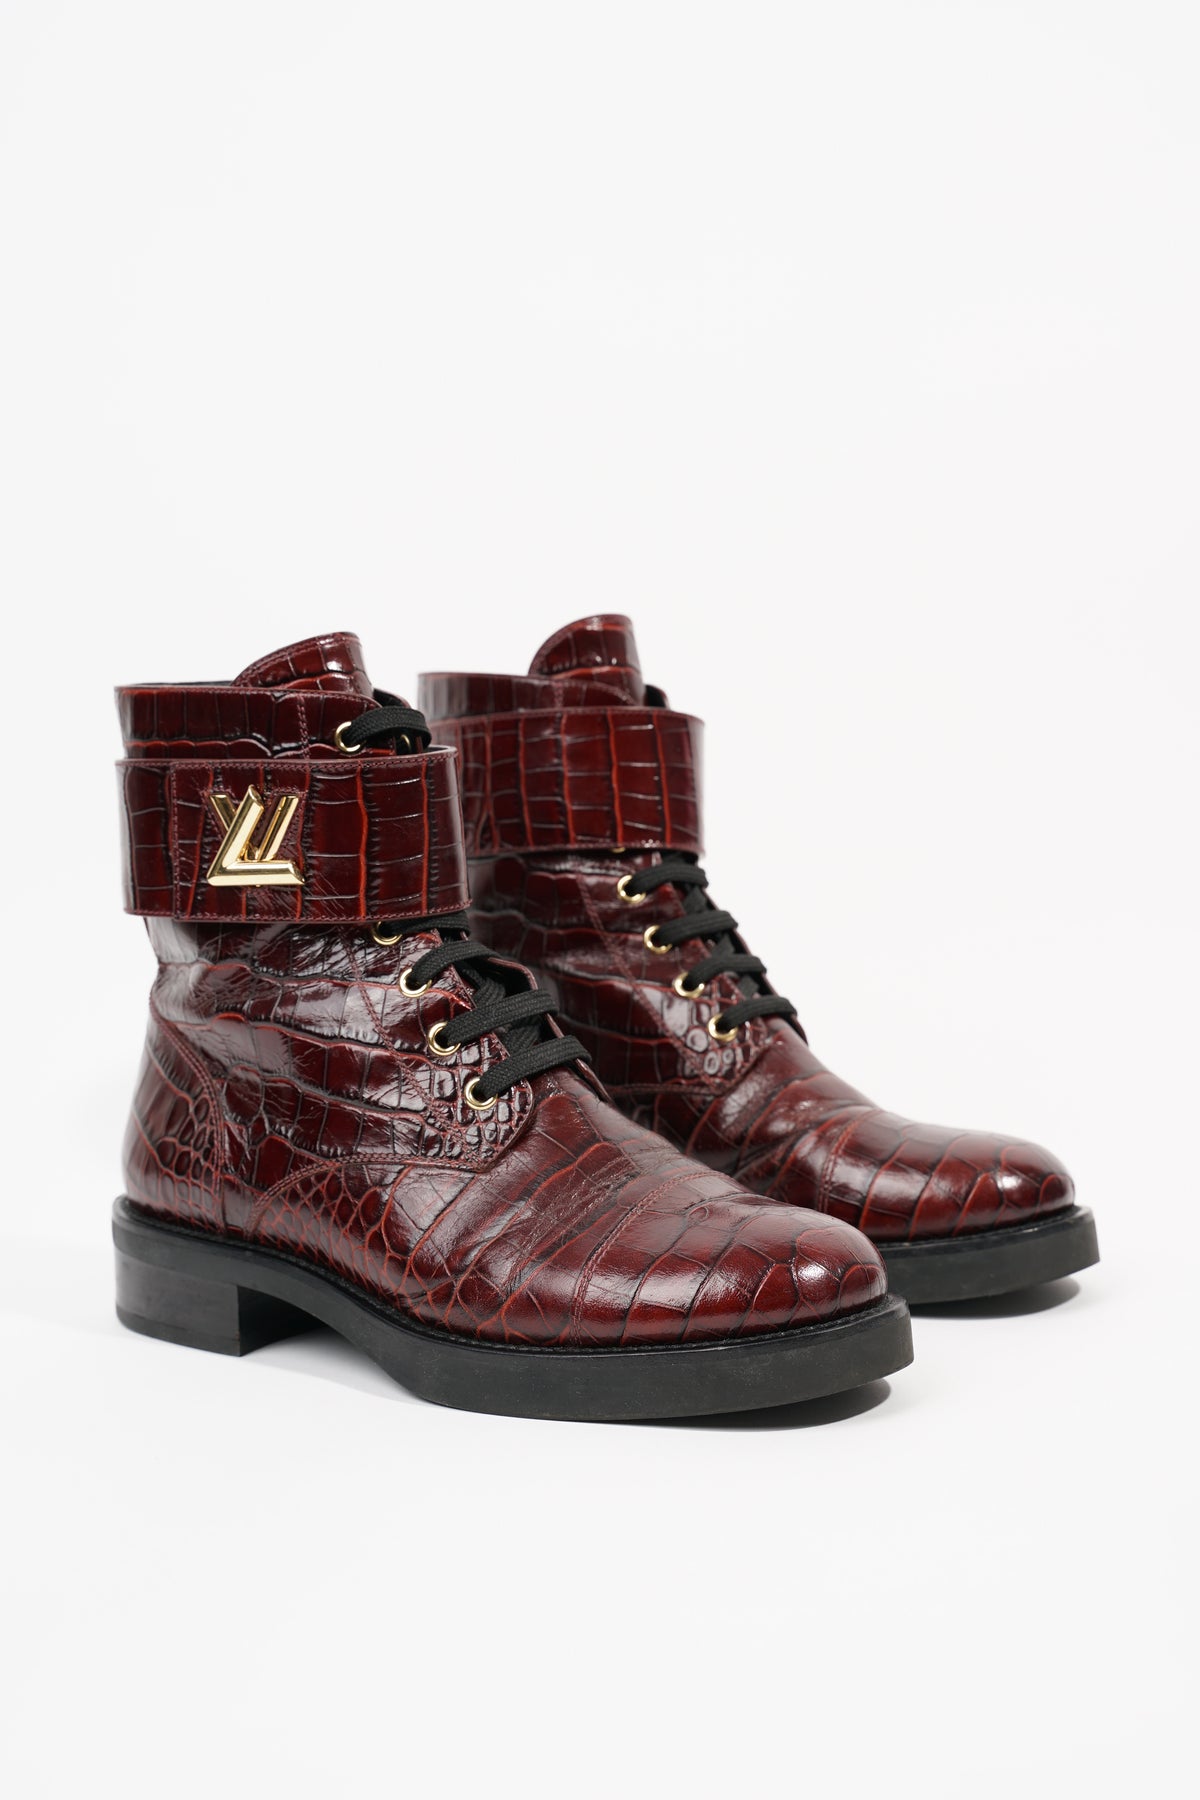 Louis Vuitton Wonderland Monogram Leather Ankle Boots Size 38 US 8 UK 5 AU 7